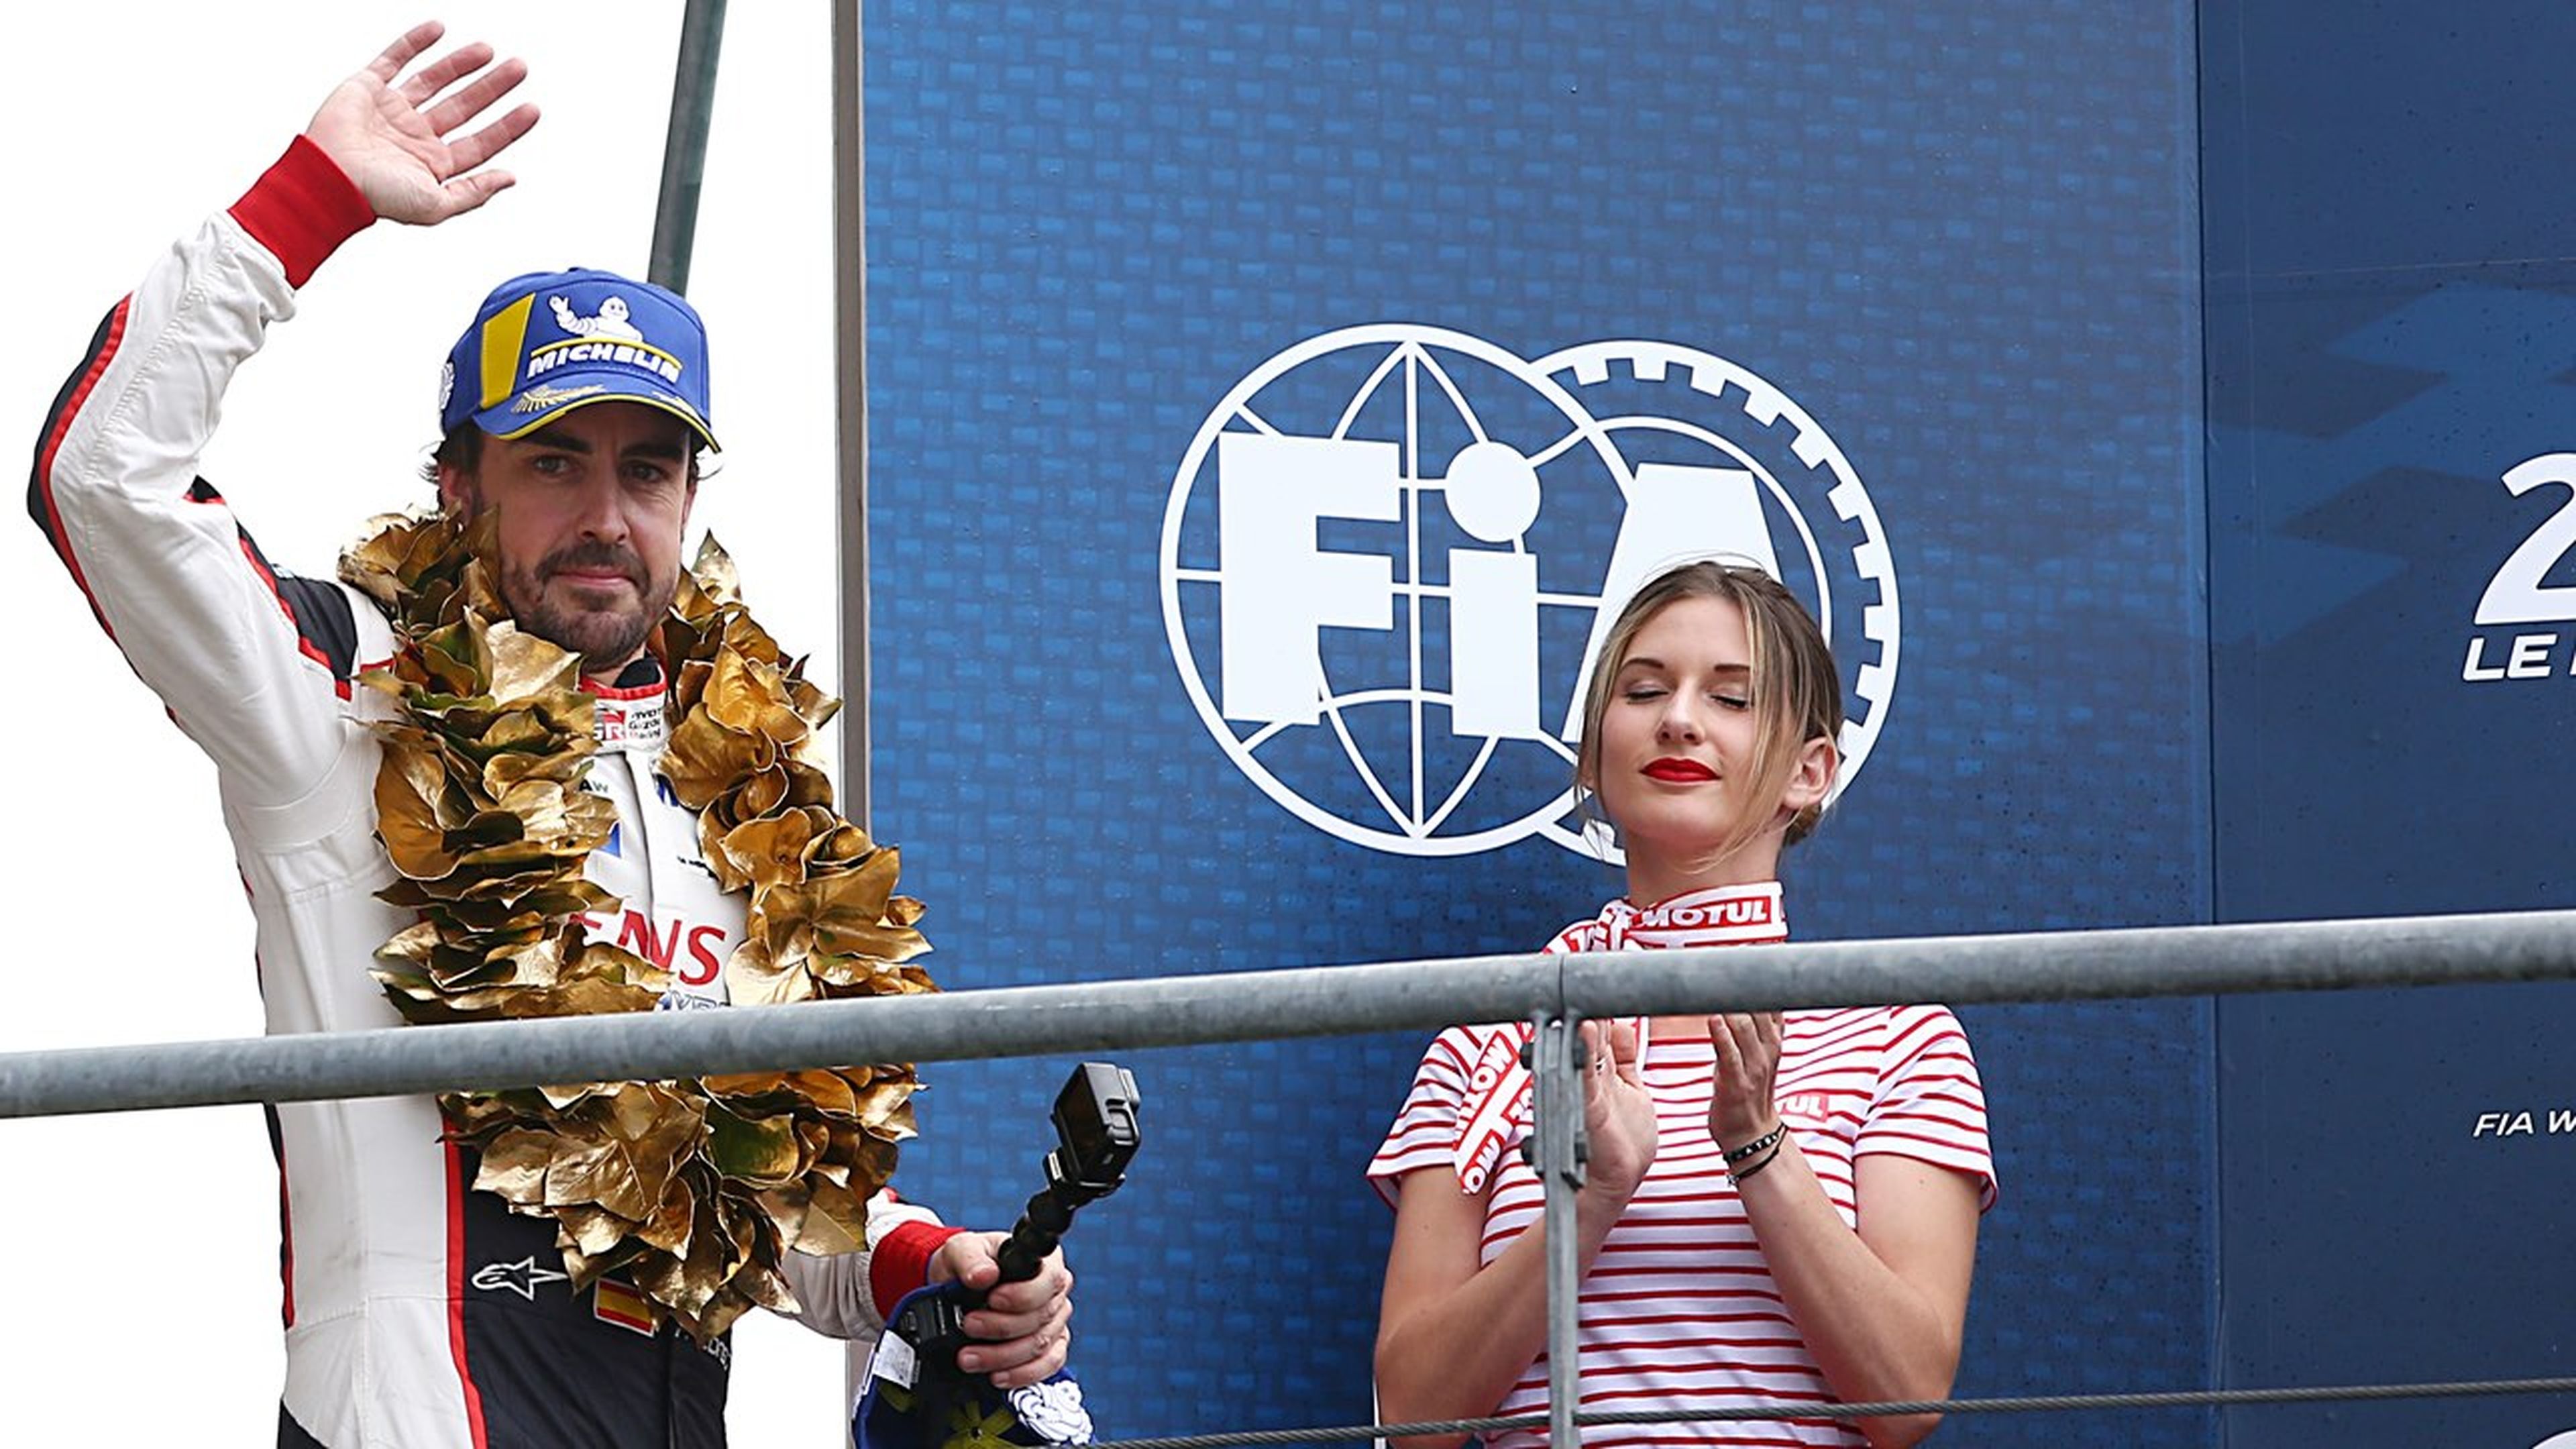 Fernando Alonso en el podio de Le Mans